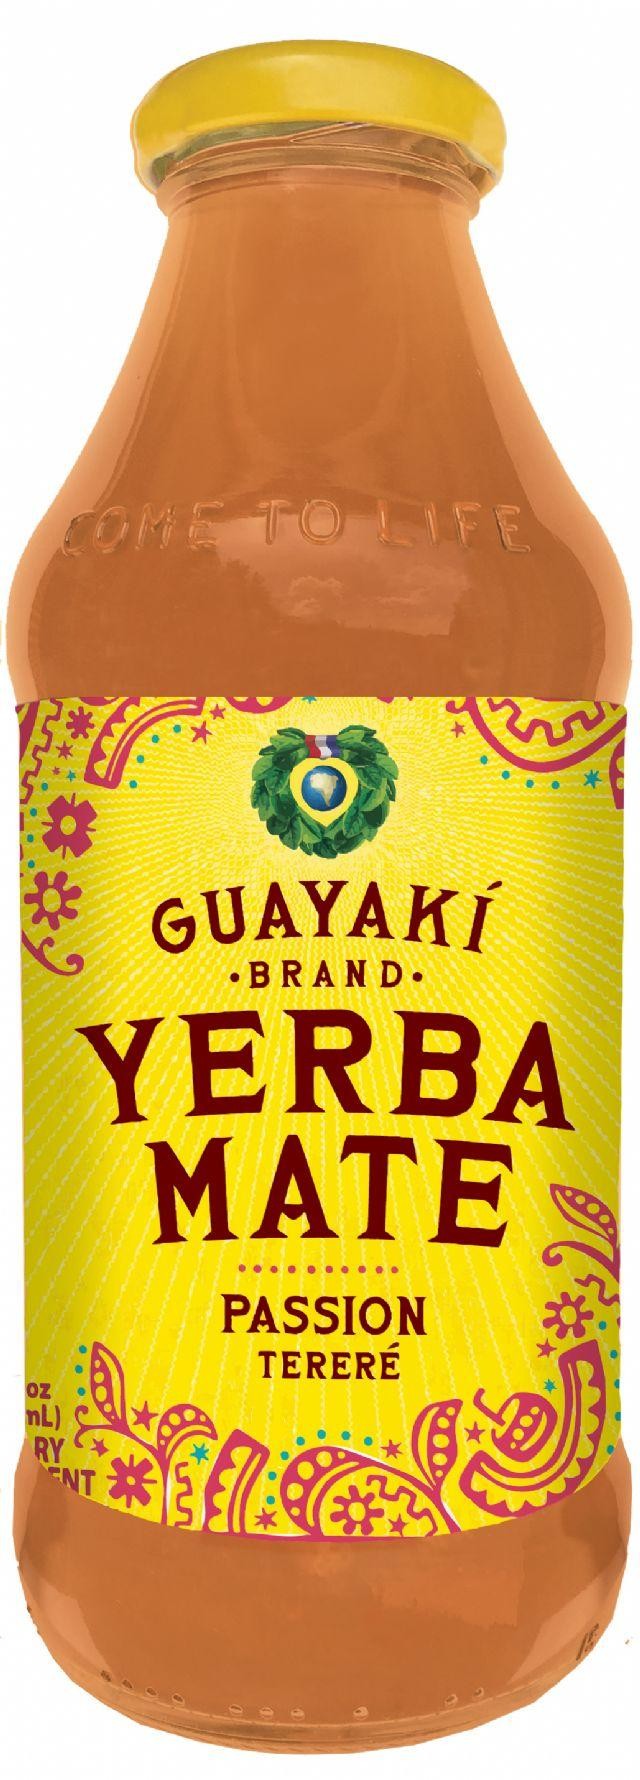 Guayaki Yerba Mate PASSION